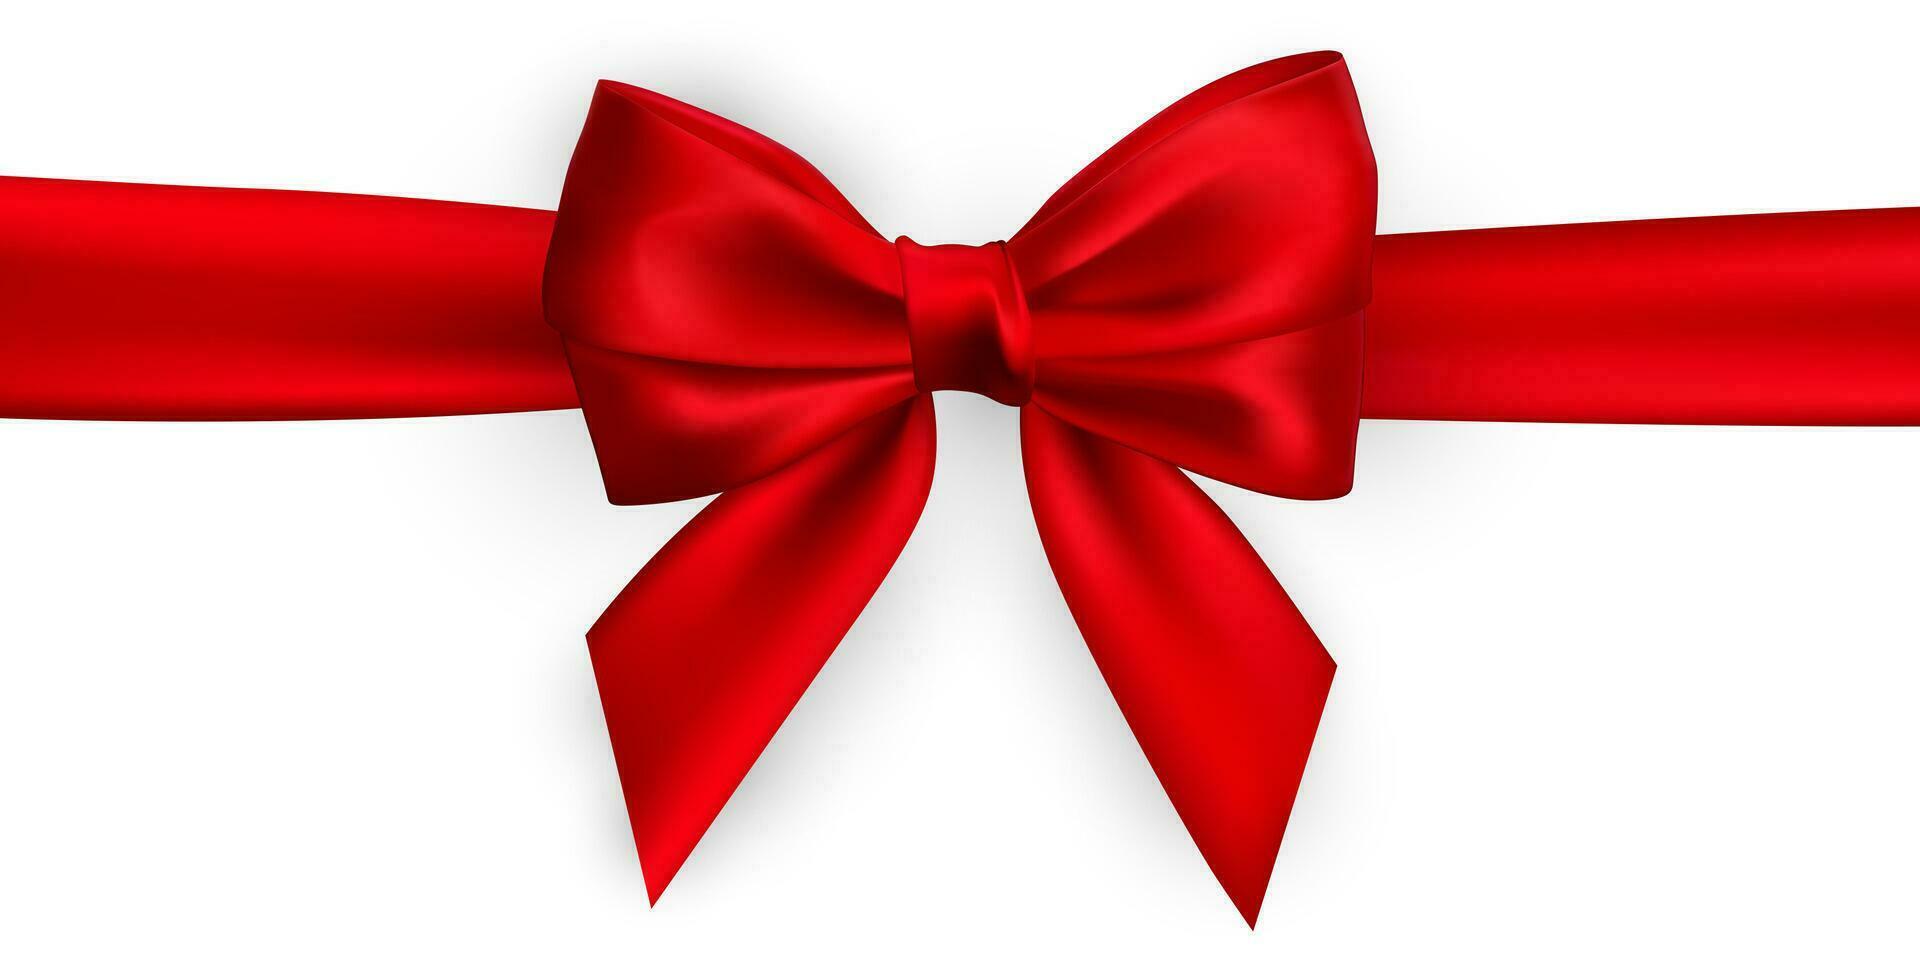 realista rojo arco y cinta. elemento para decoración regalos, saludos, vacaciones. vector ilustración